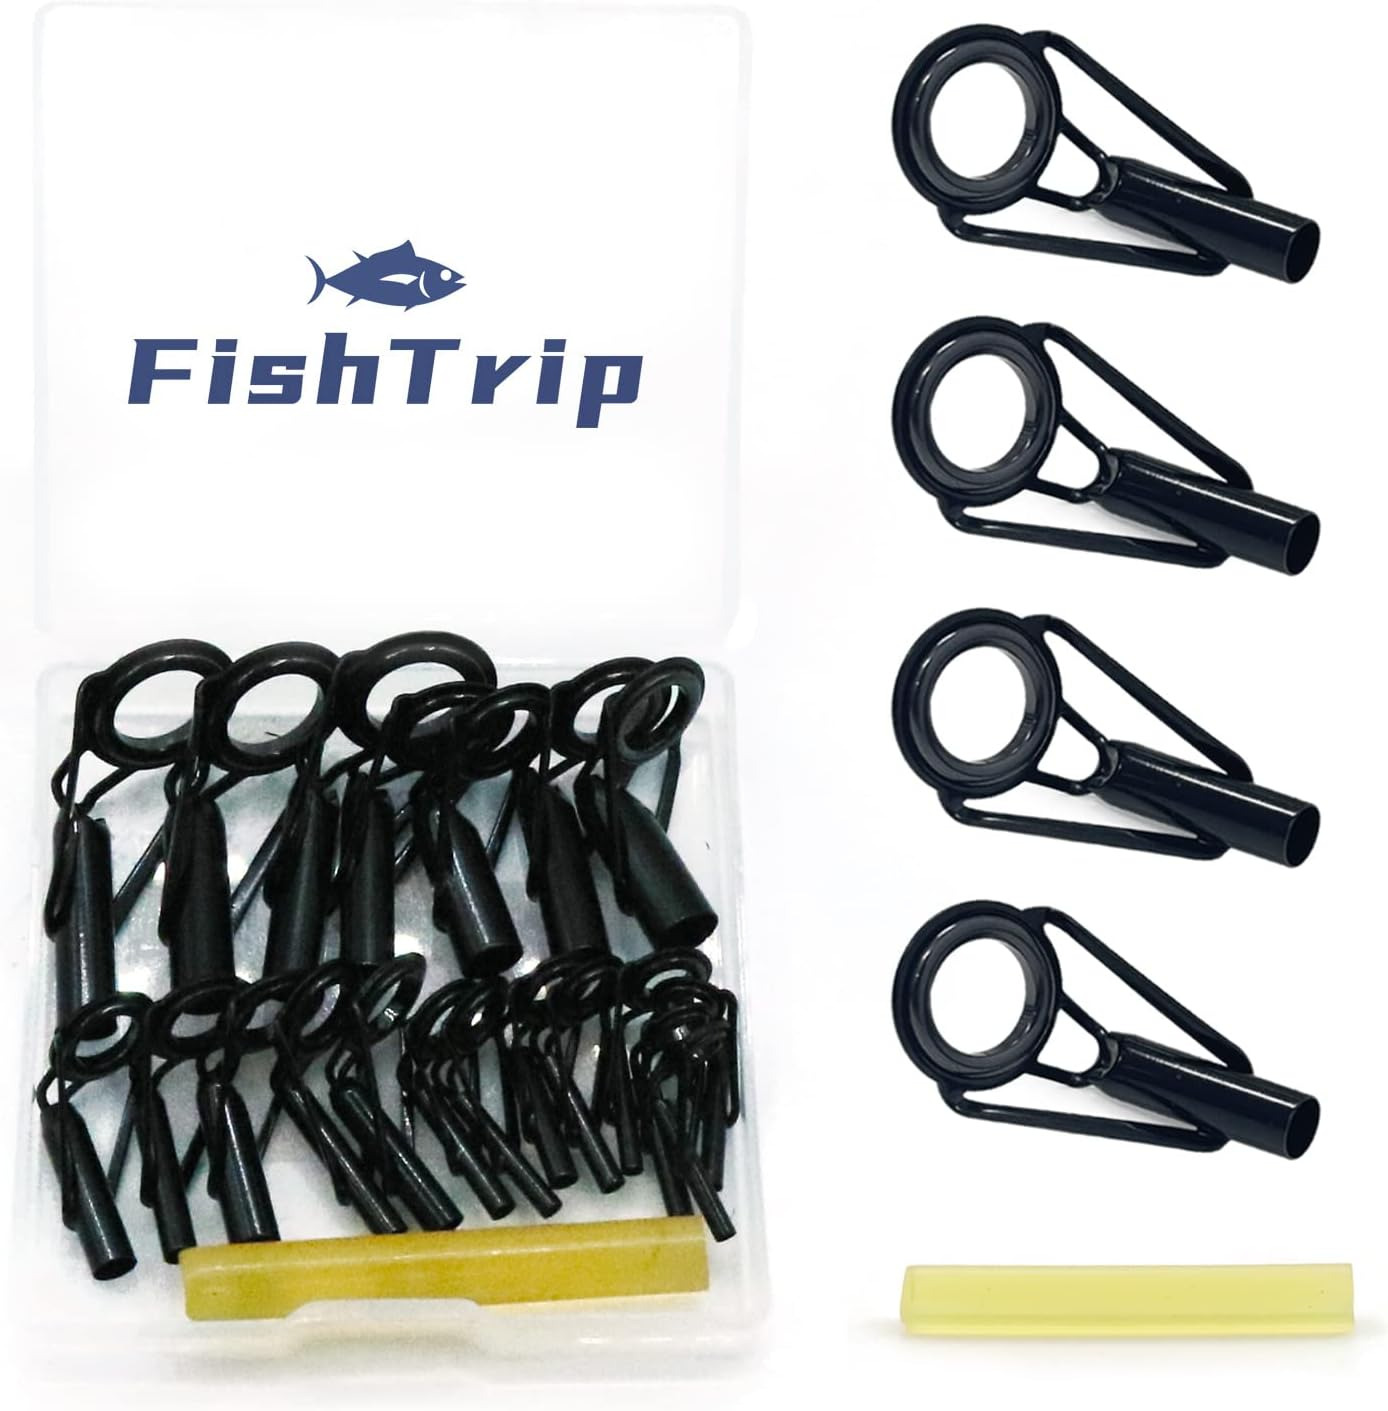 Fishing Tips Repair Kit Fishing Rod Tips Replacement Kit Stainless Steel Ceramic